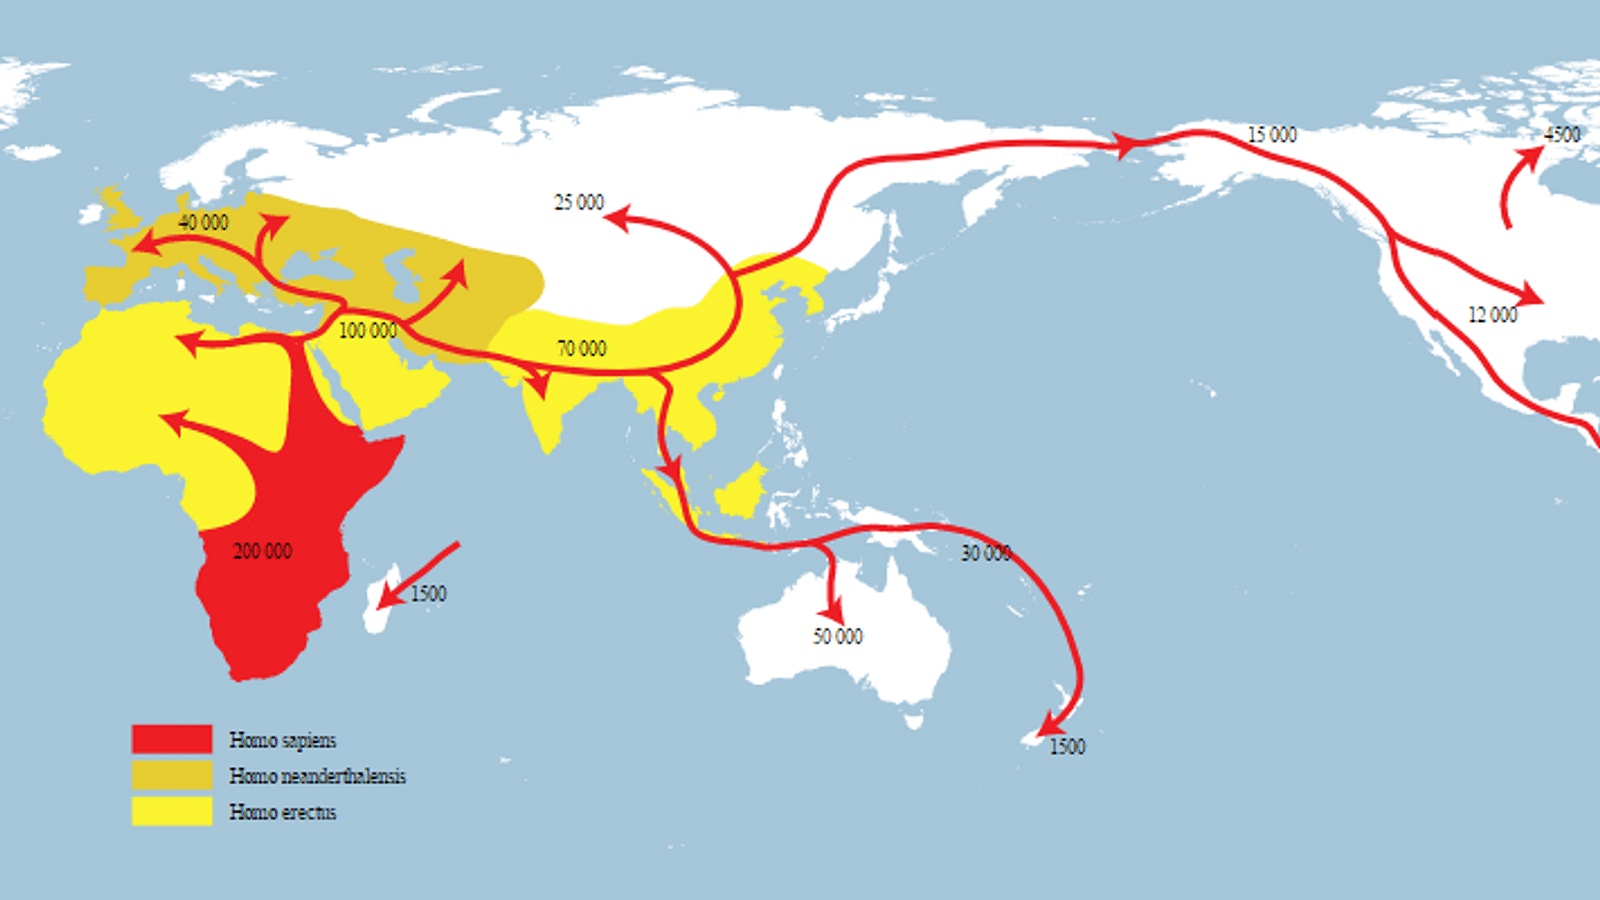 homo sapiens neanderthalensis timeline